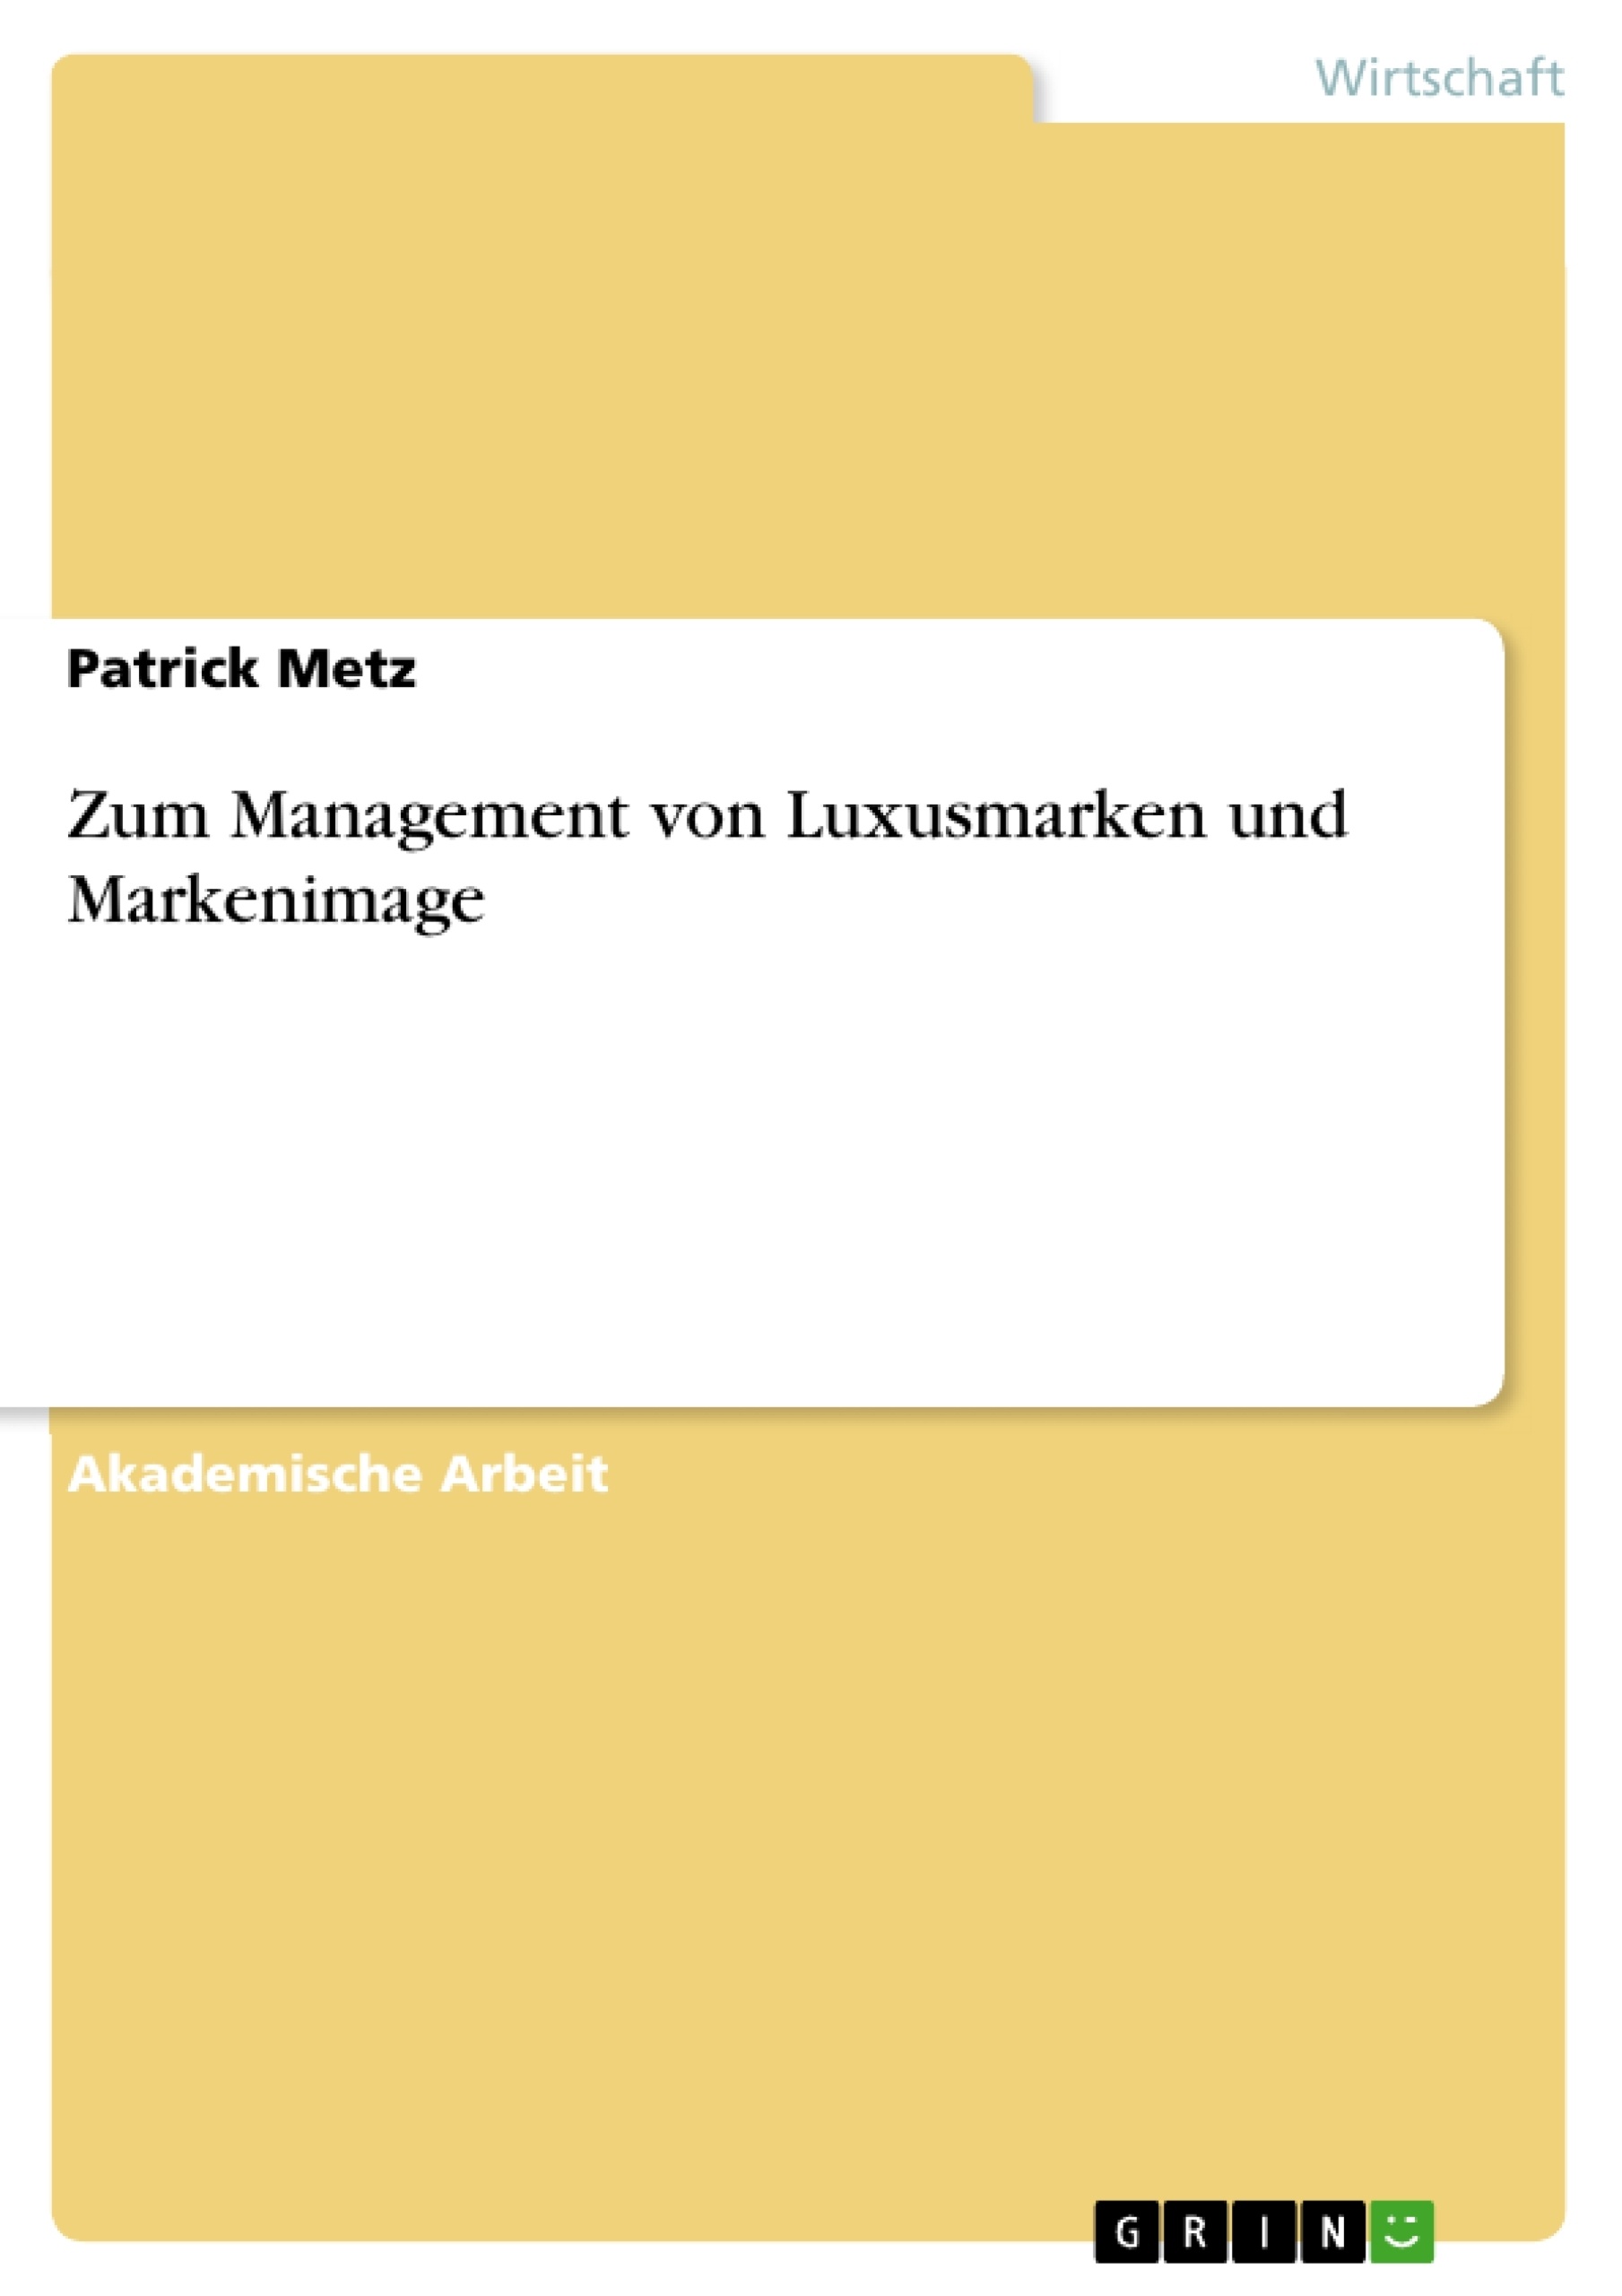 Titre: Zum Management von Luxusmarken und Markenimage